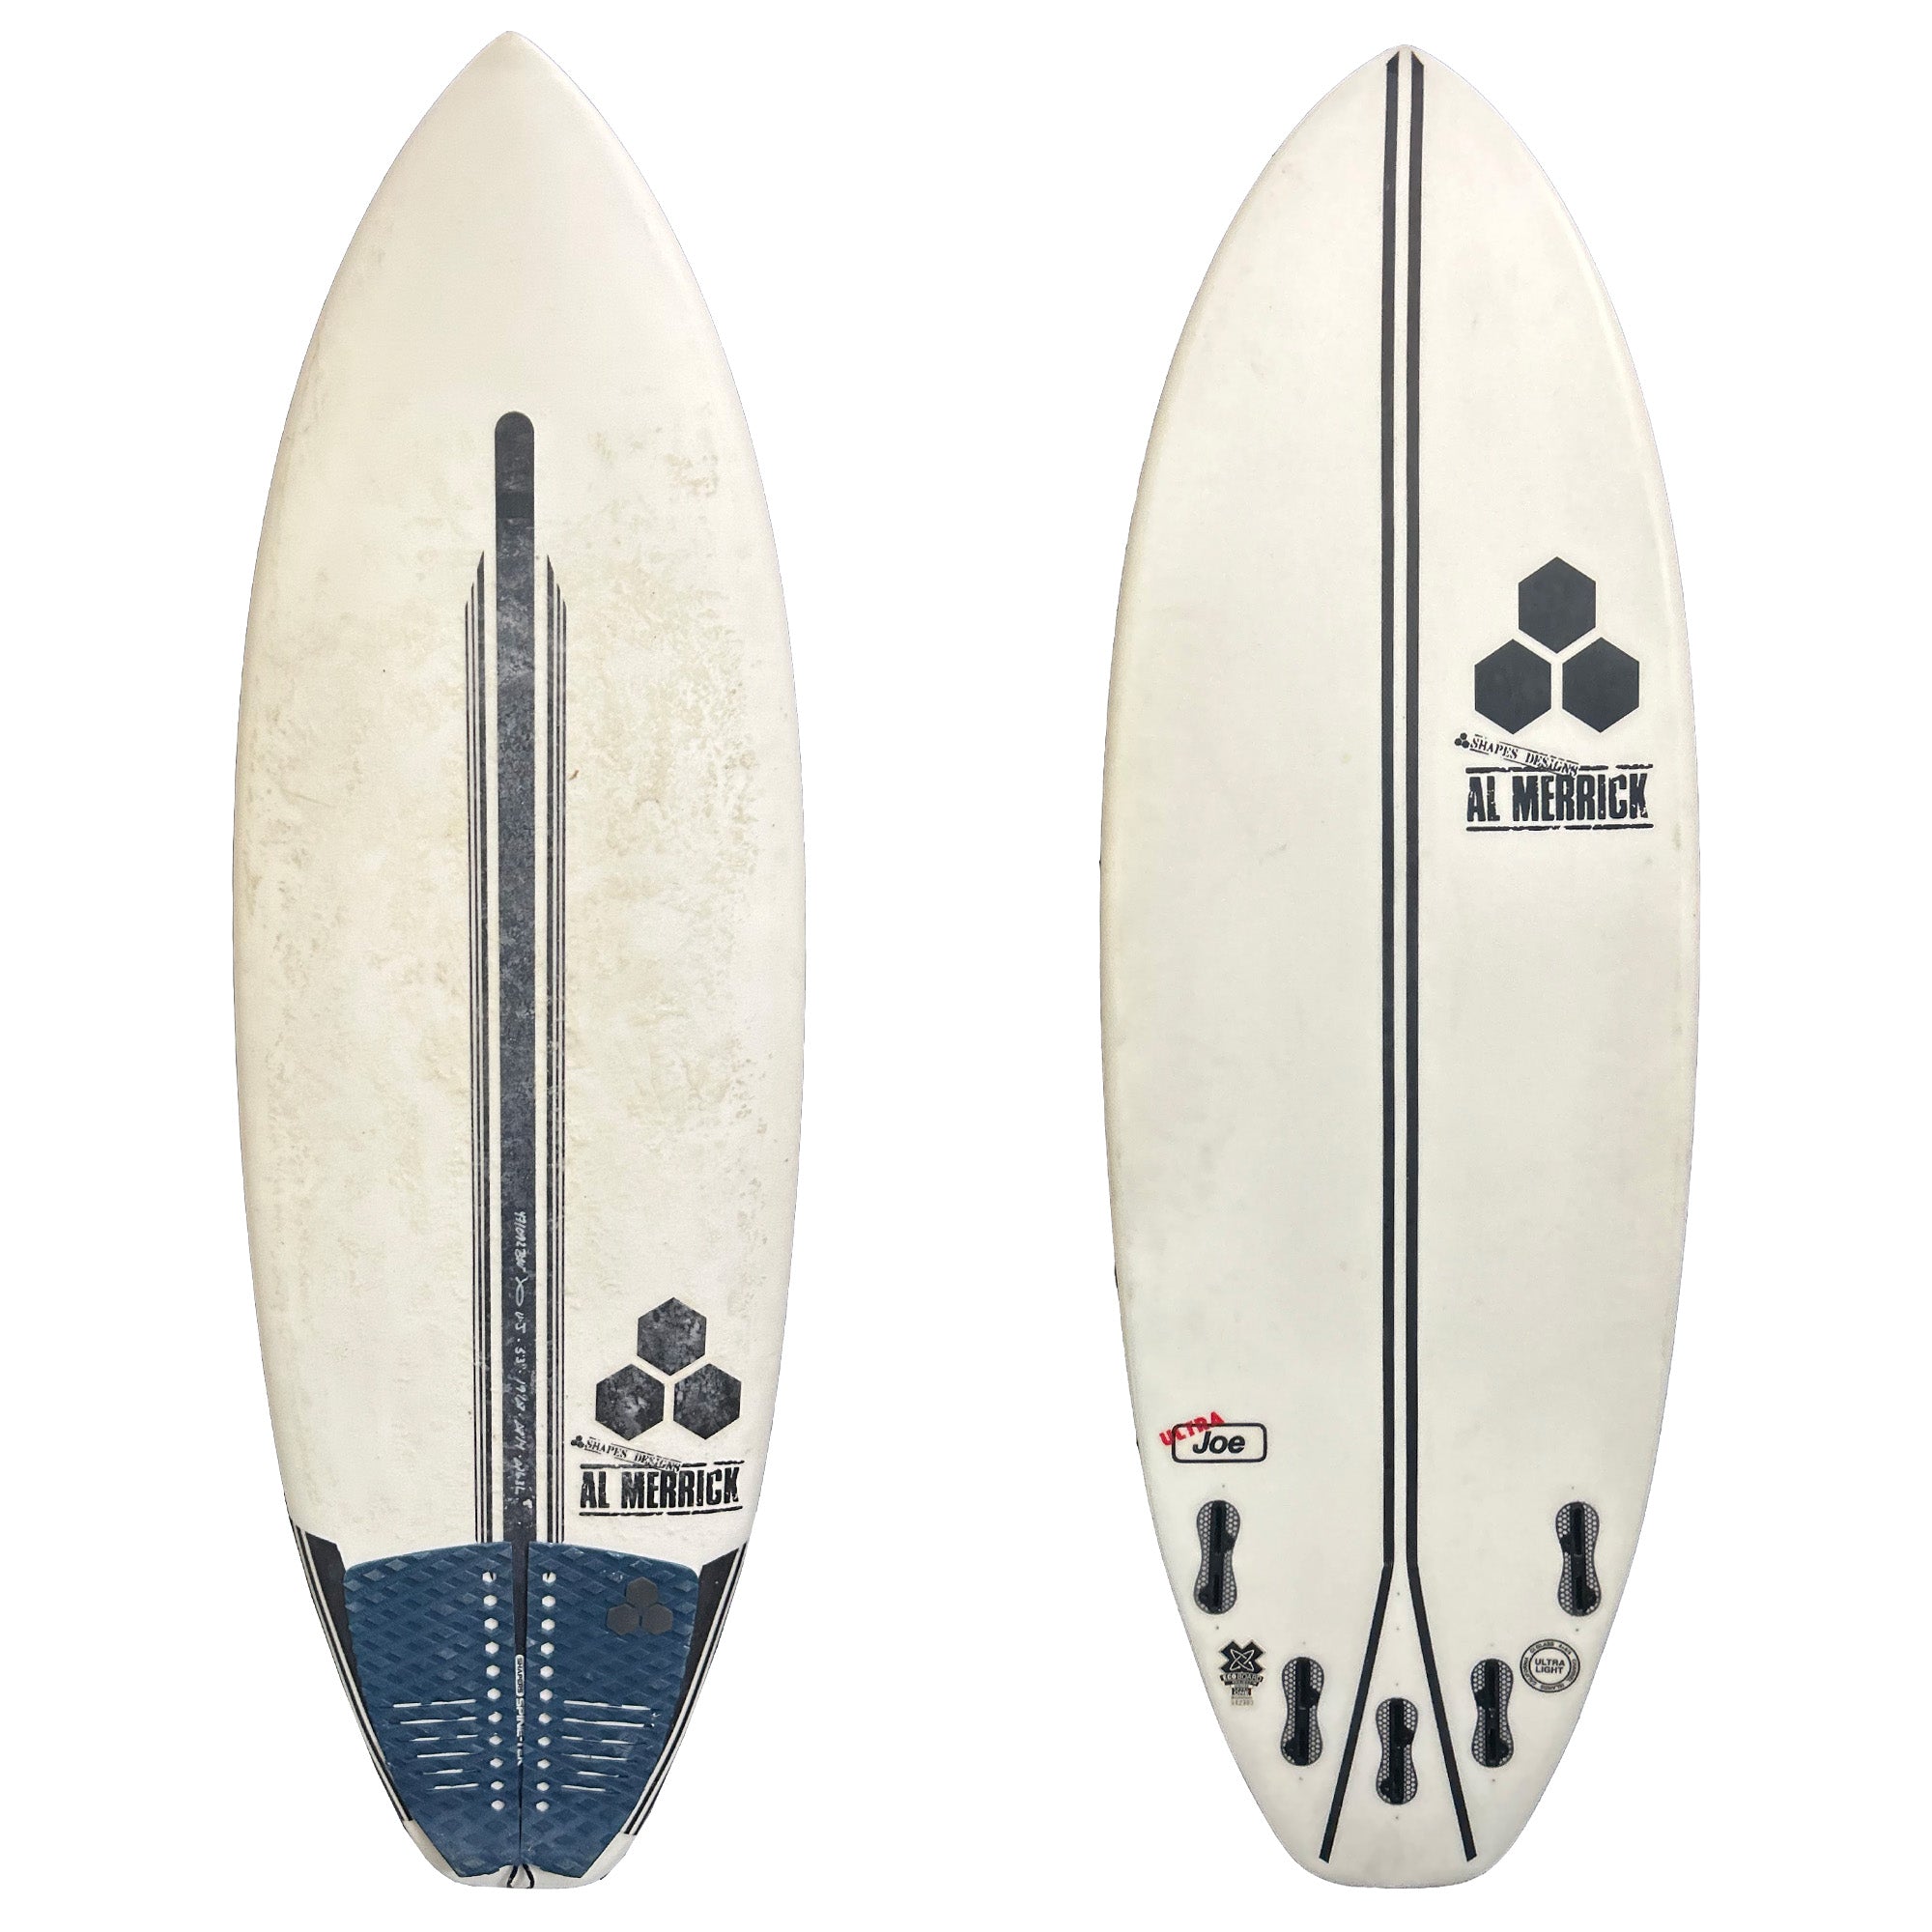 Channel Islands Ultra Joe 5'3 Used Surfboard